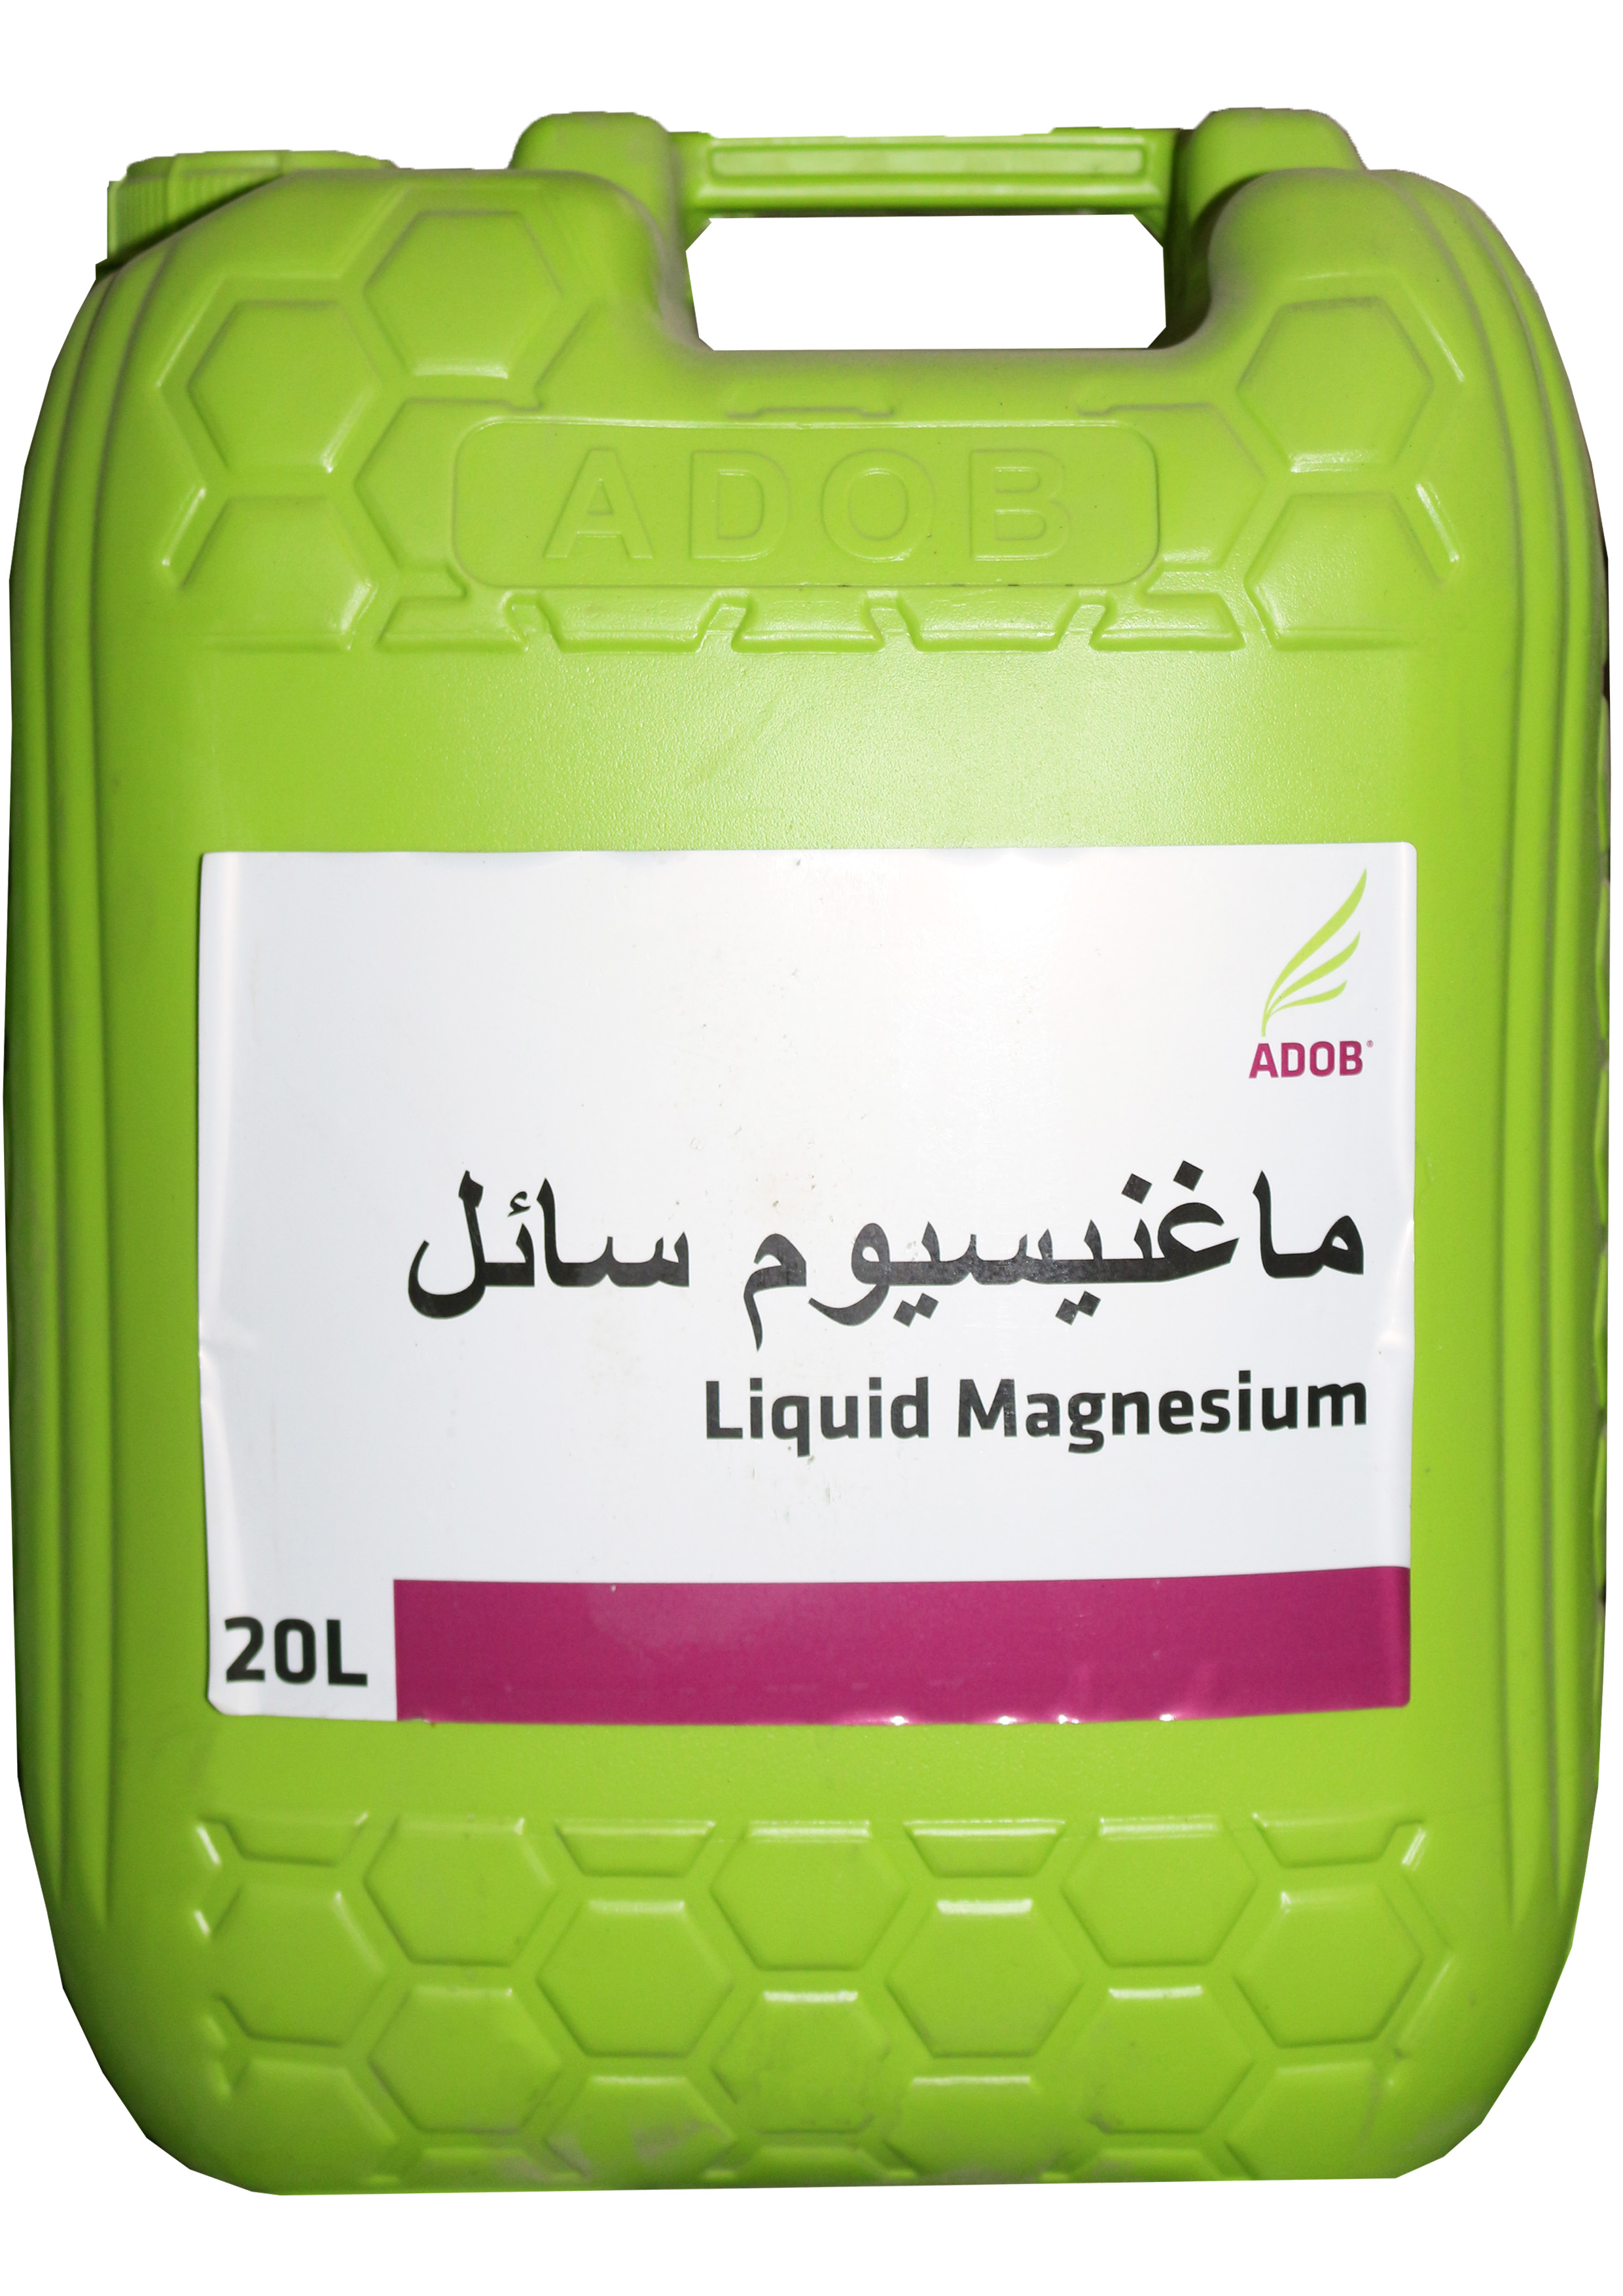 Adob Liquid Magnesium